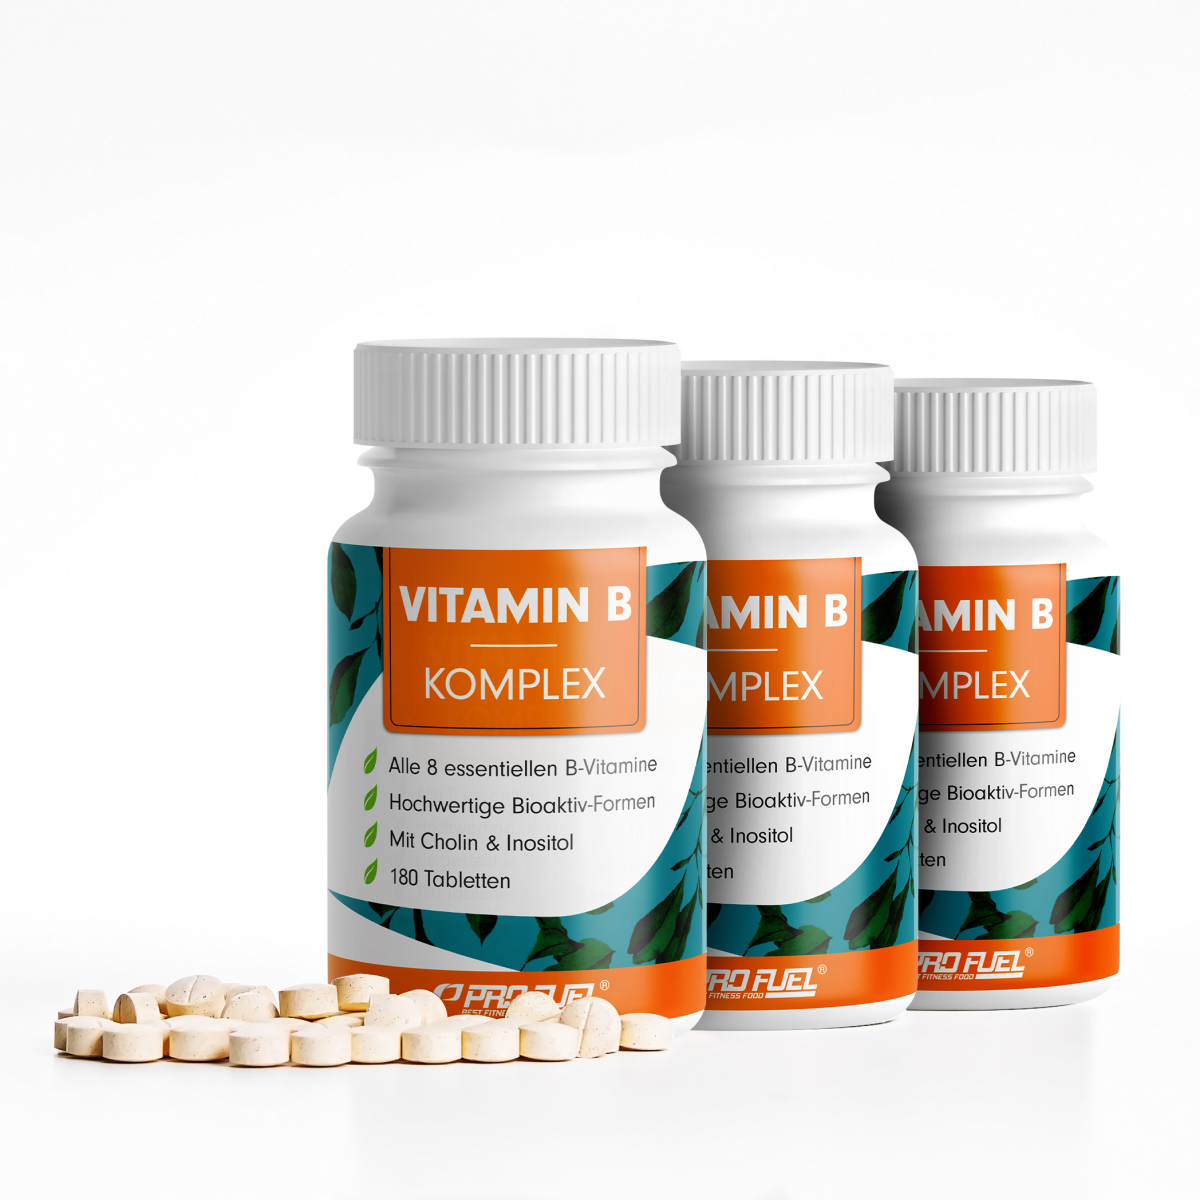 PRO FUEL Vitamin B Komplex -  365 Tabletten